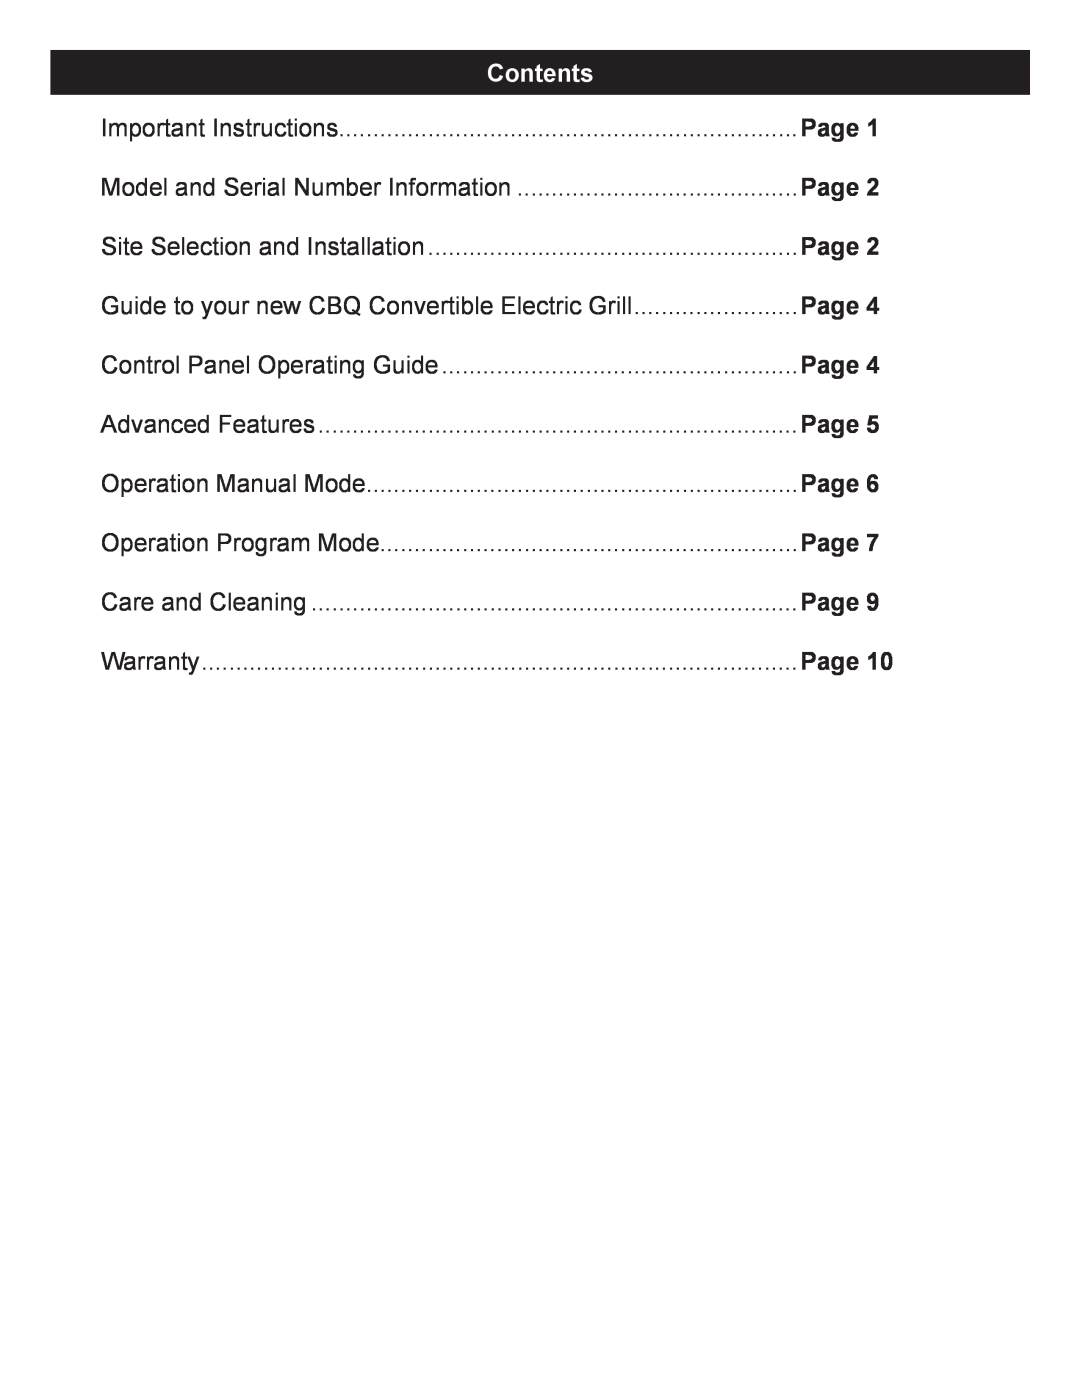 Dimplex CBQ-120-ELEM owner manual Contents, Page 